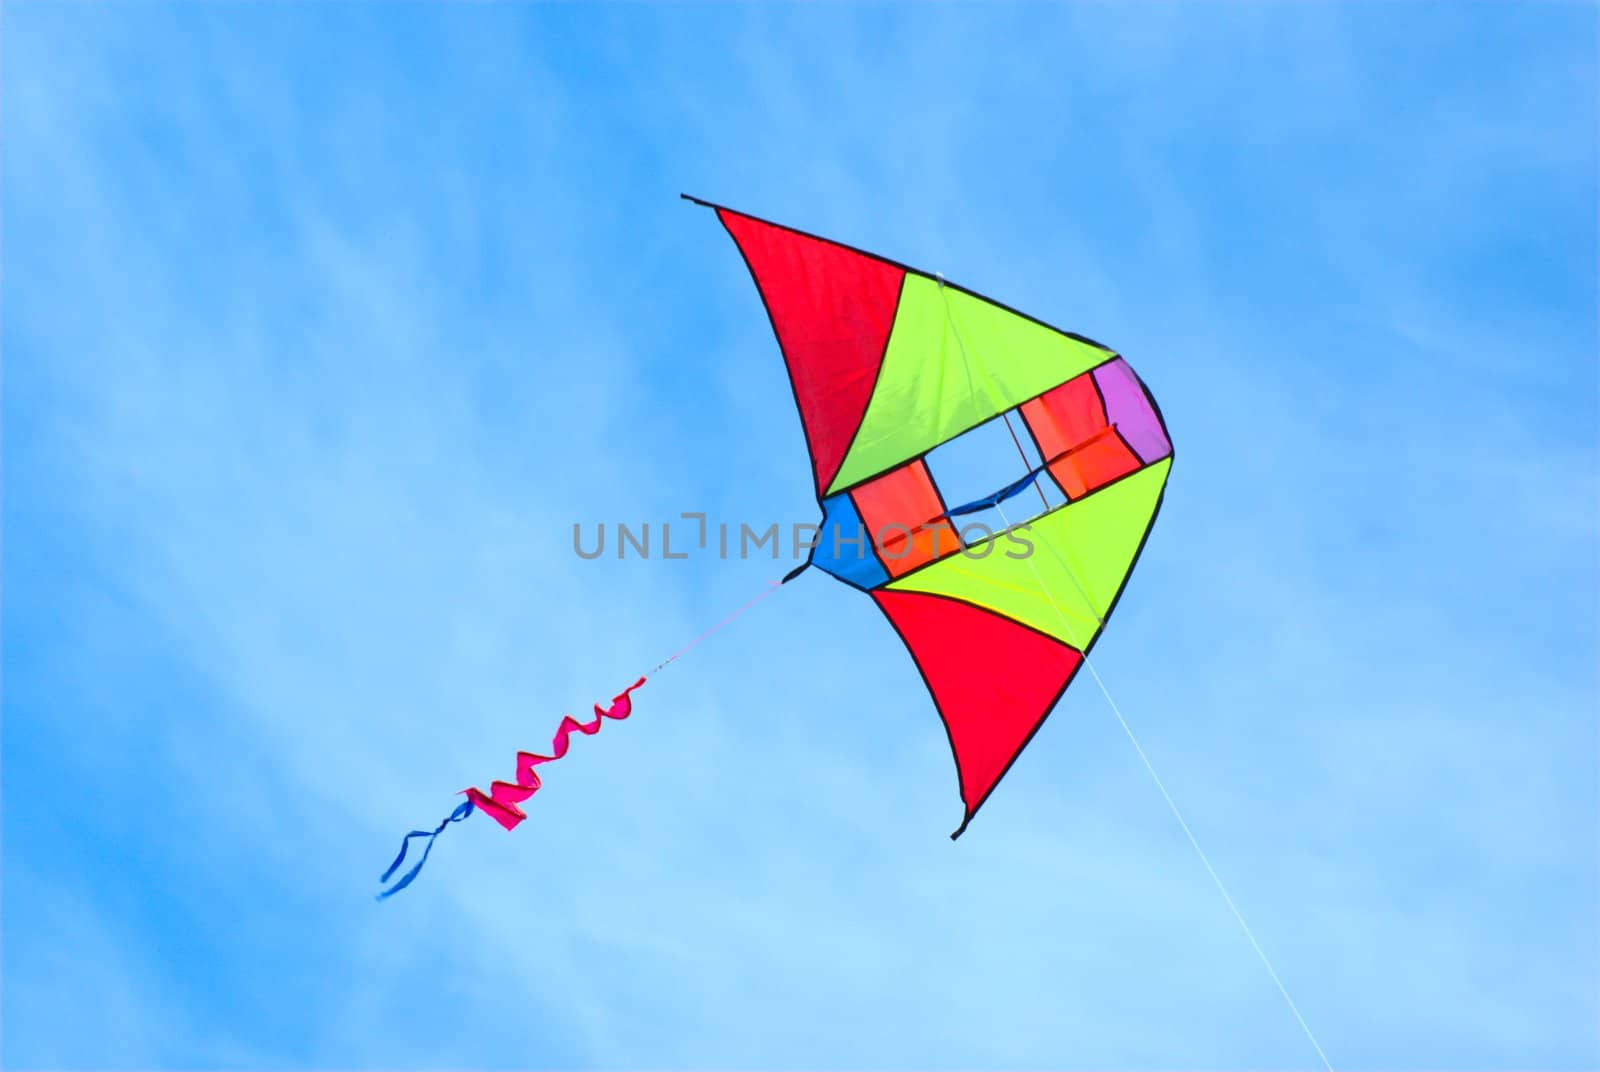 Kite flying in the sky.